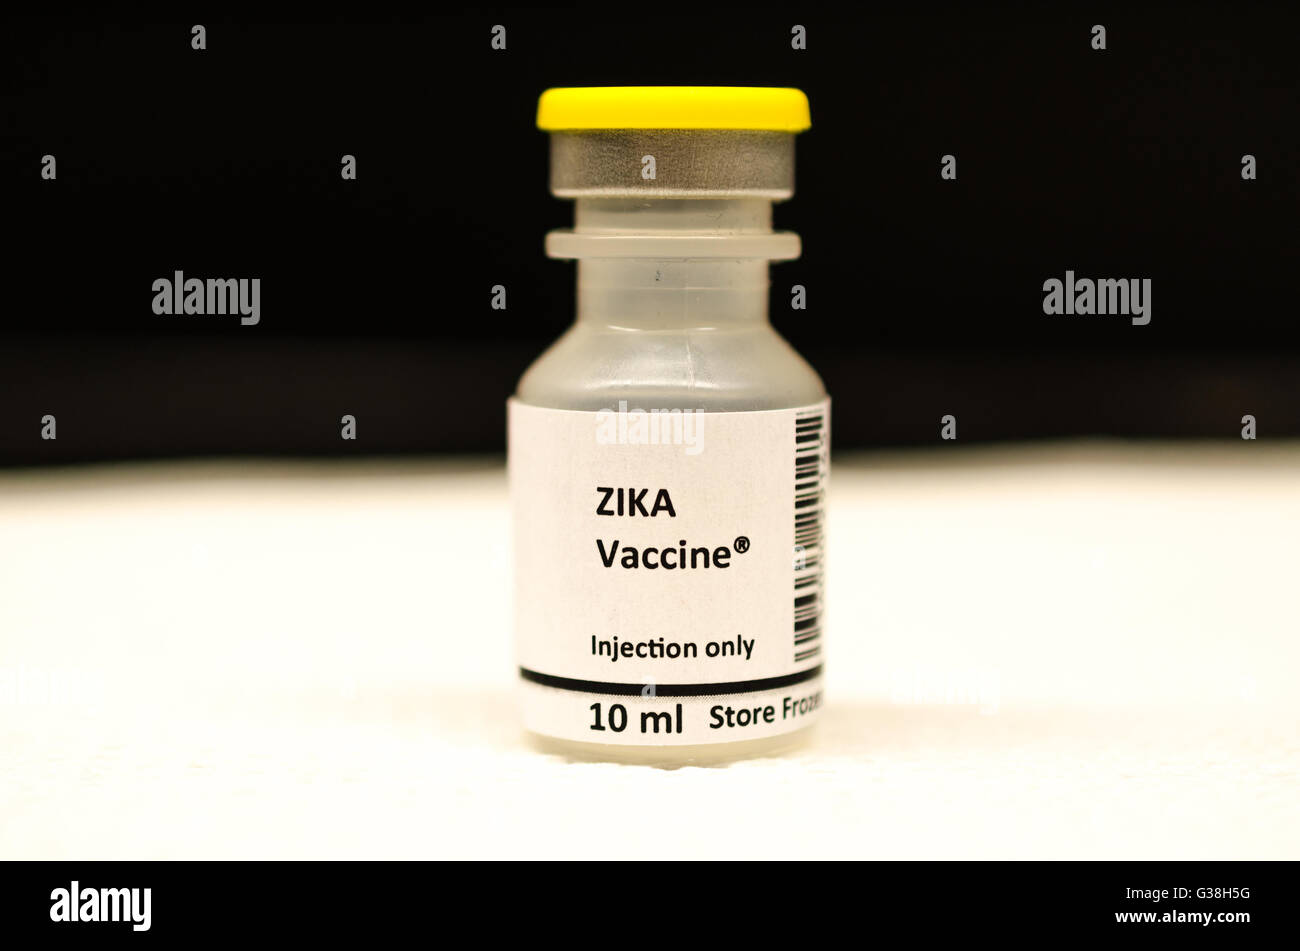 Zika vaccine Stock Photo